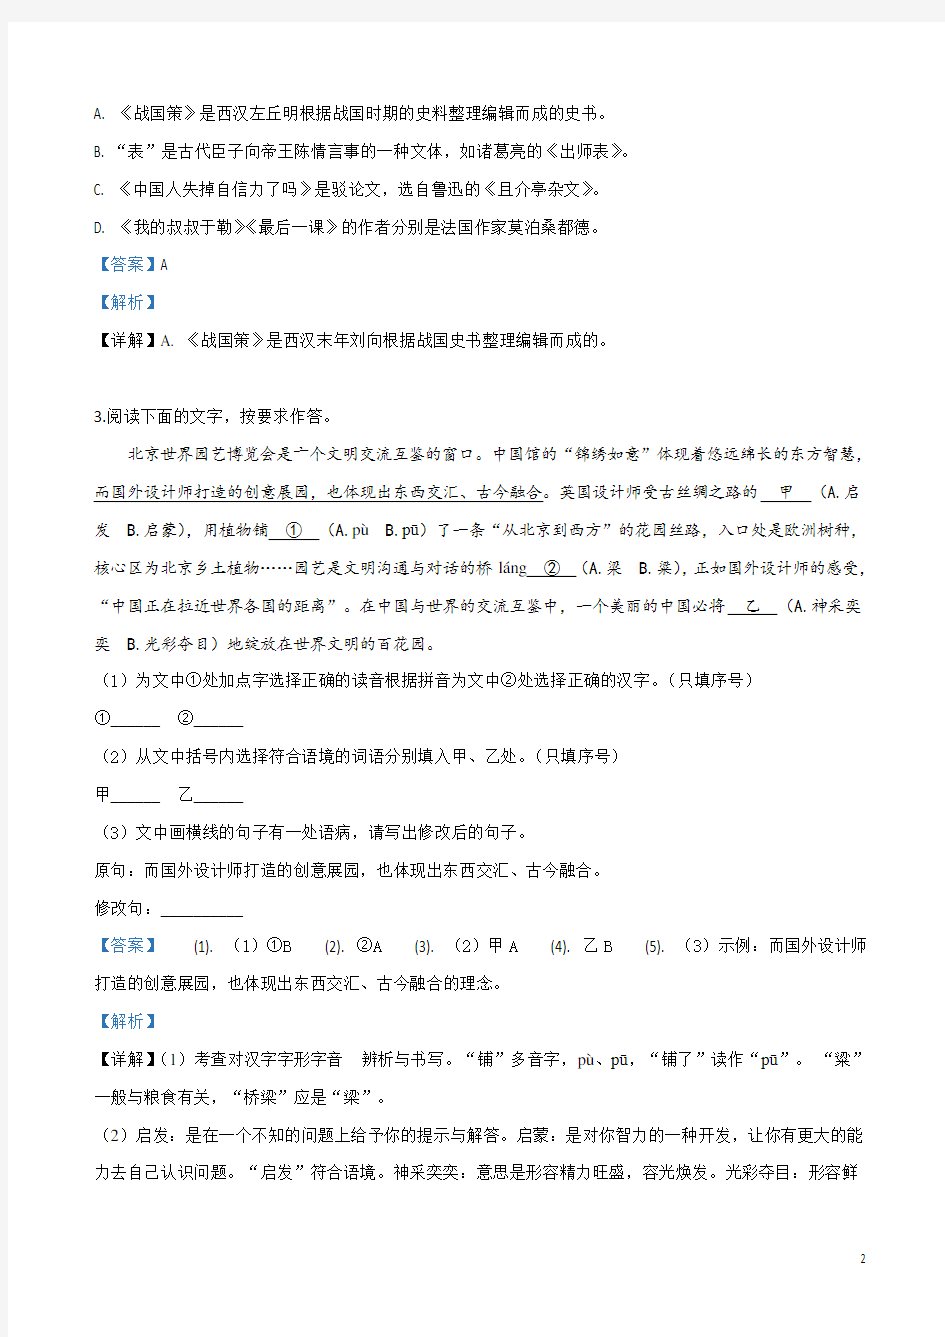 2019年福建省中考语文试卷(解析版)